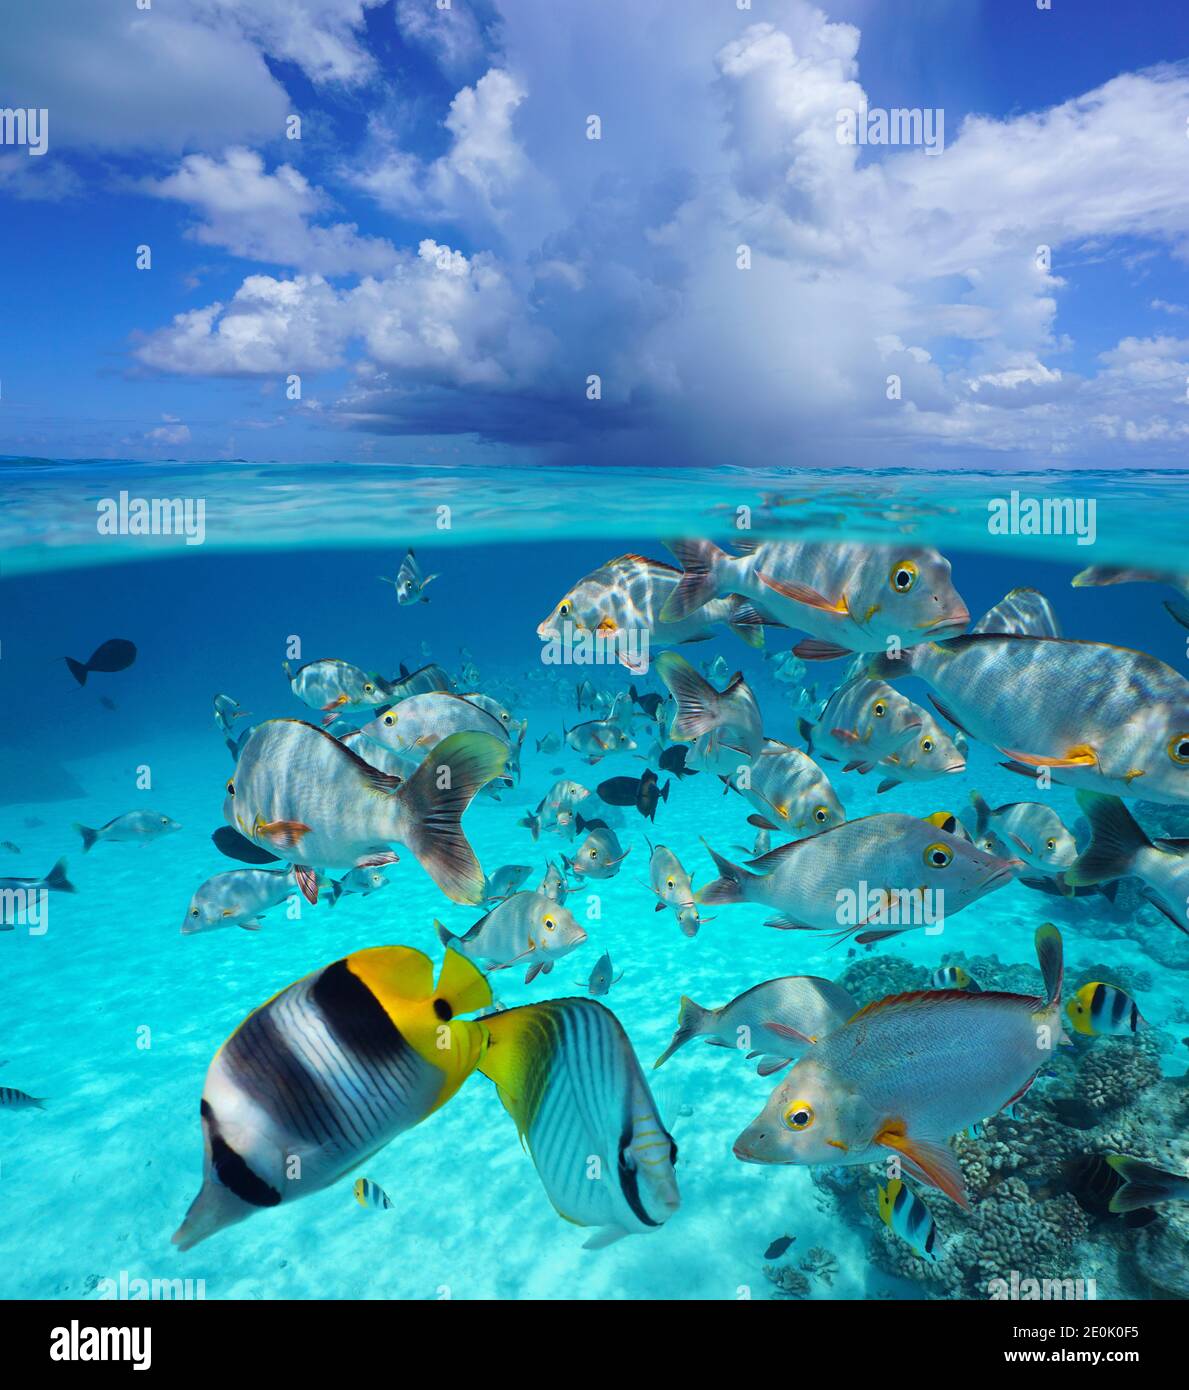 Nuage au-dessus de la surface de la mer avec poissons tropicaux sous l'eau, paysage marin et sous l'eau, océan Pacifique, Polynésie française, Océanie Banque D'Images